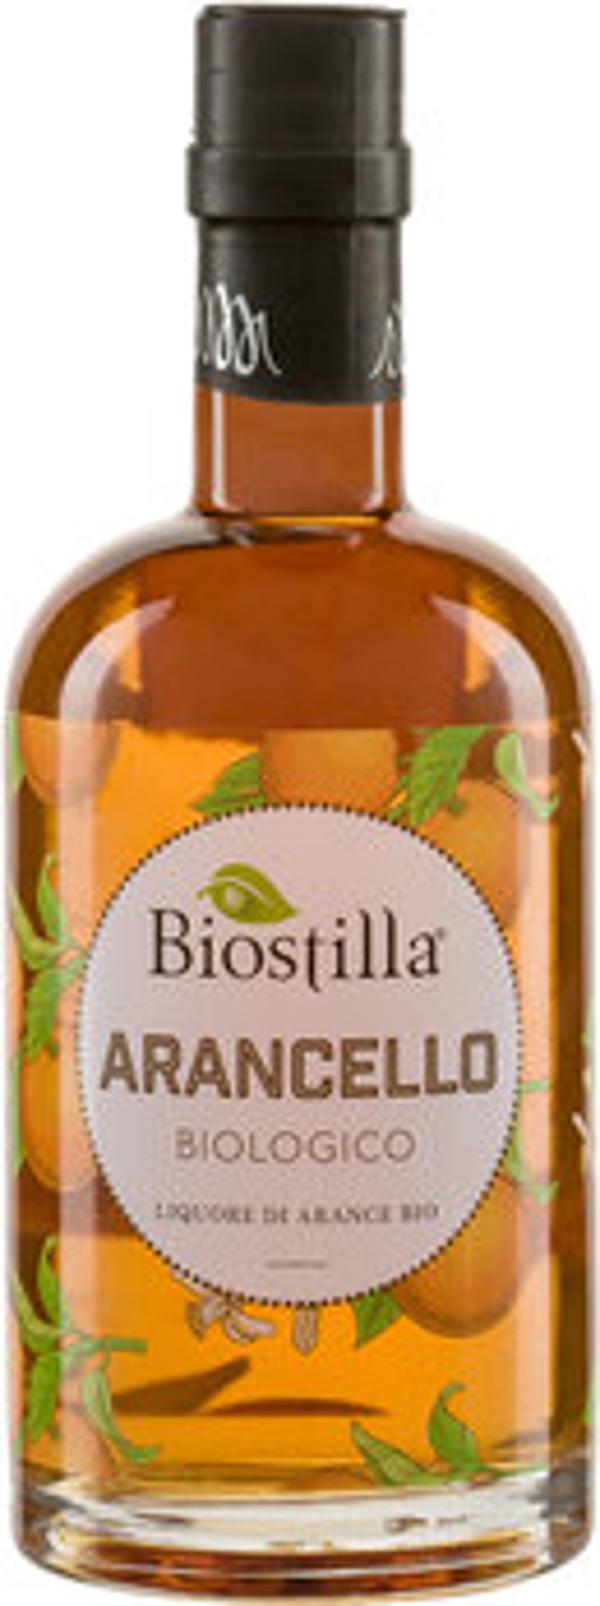 Produktfoto zu Biostilla Nocciola Haselnusslikör